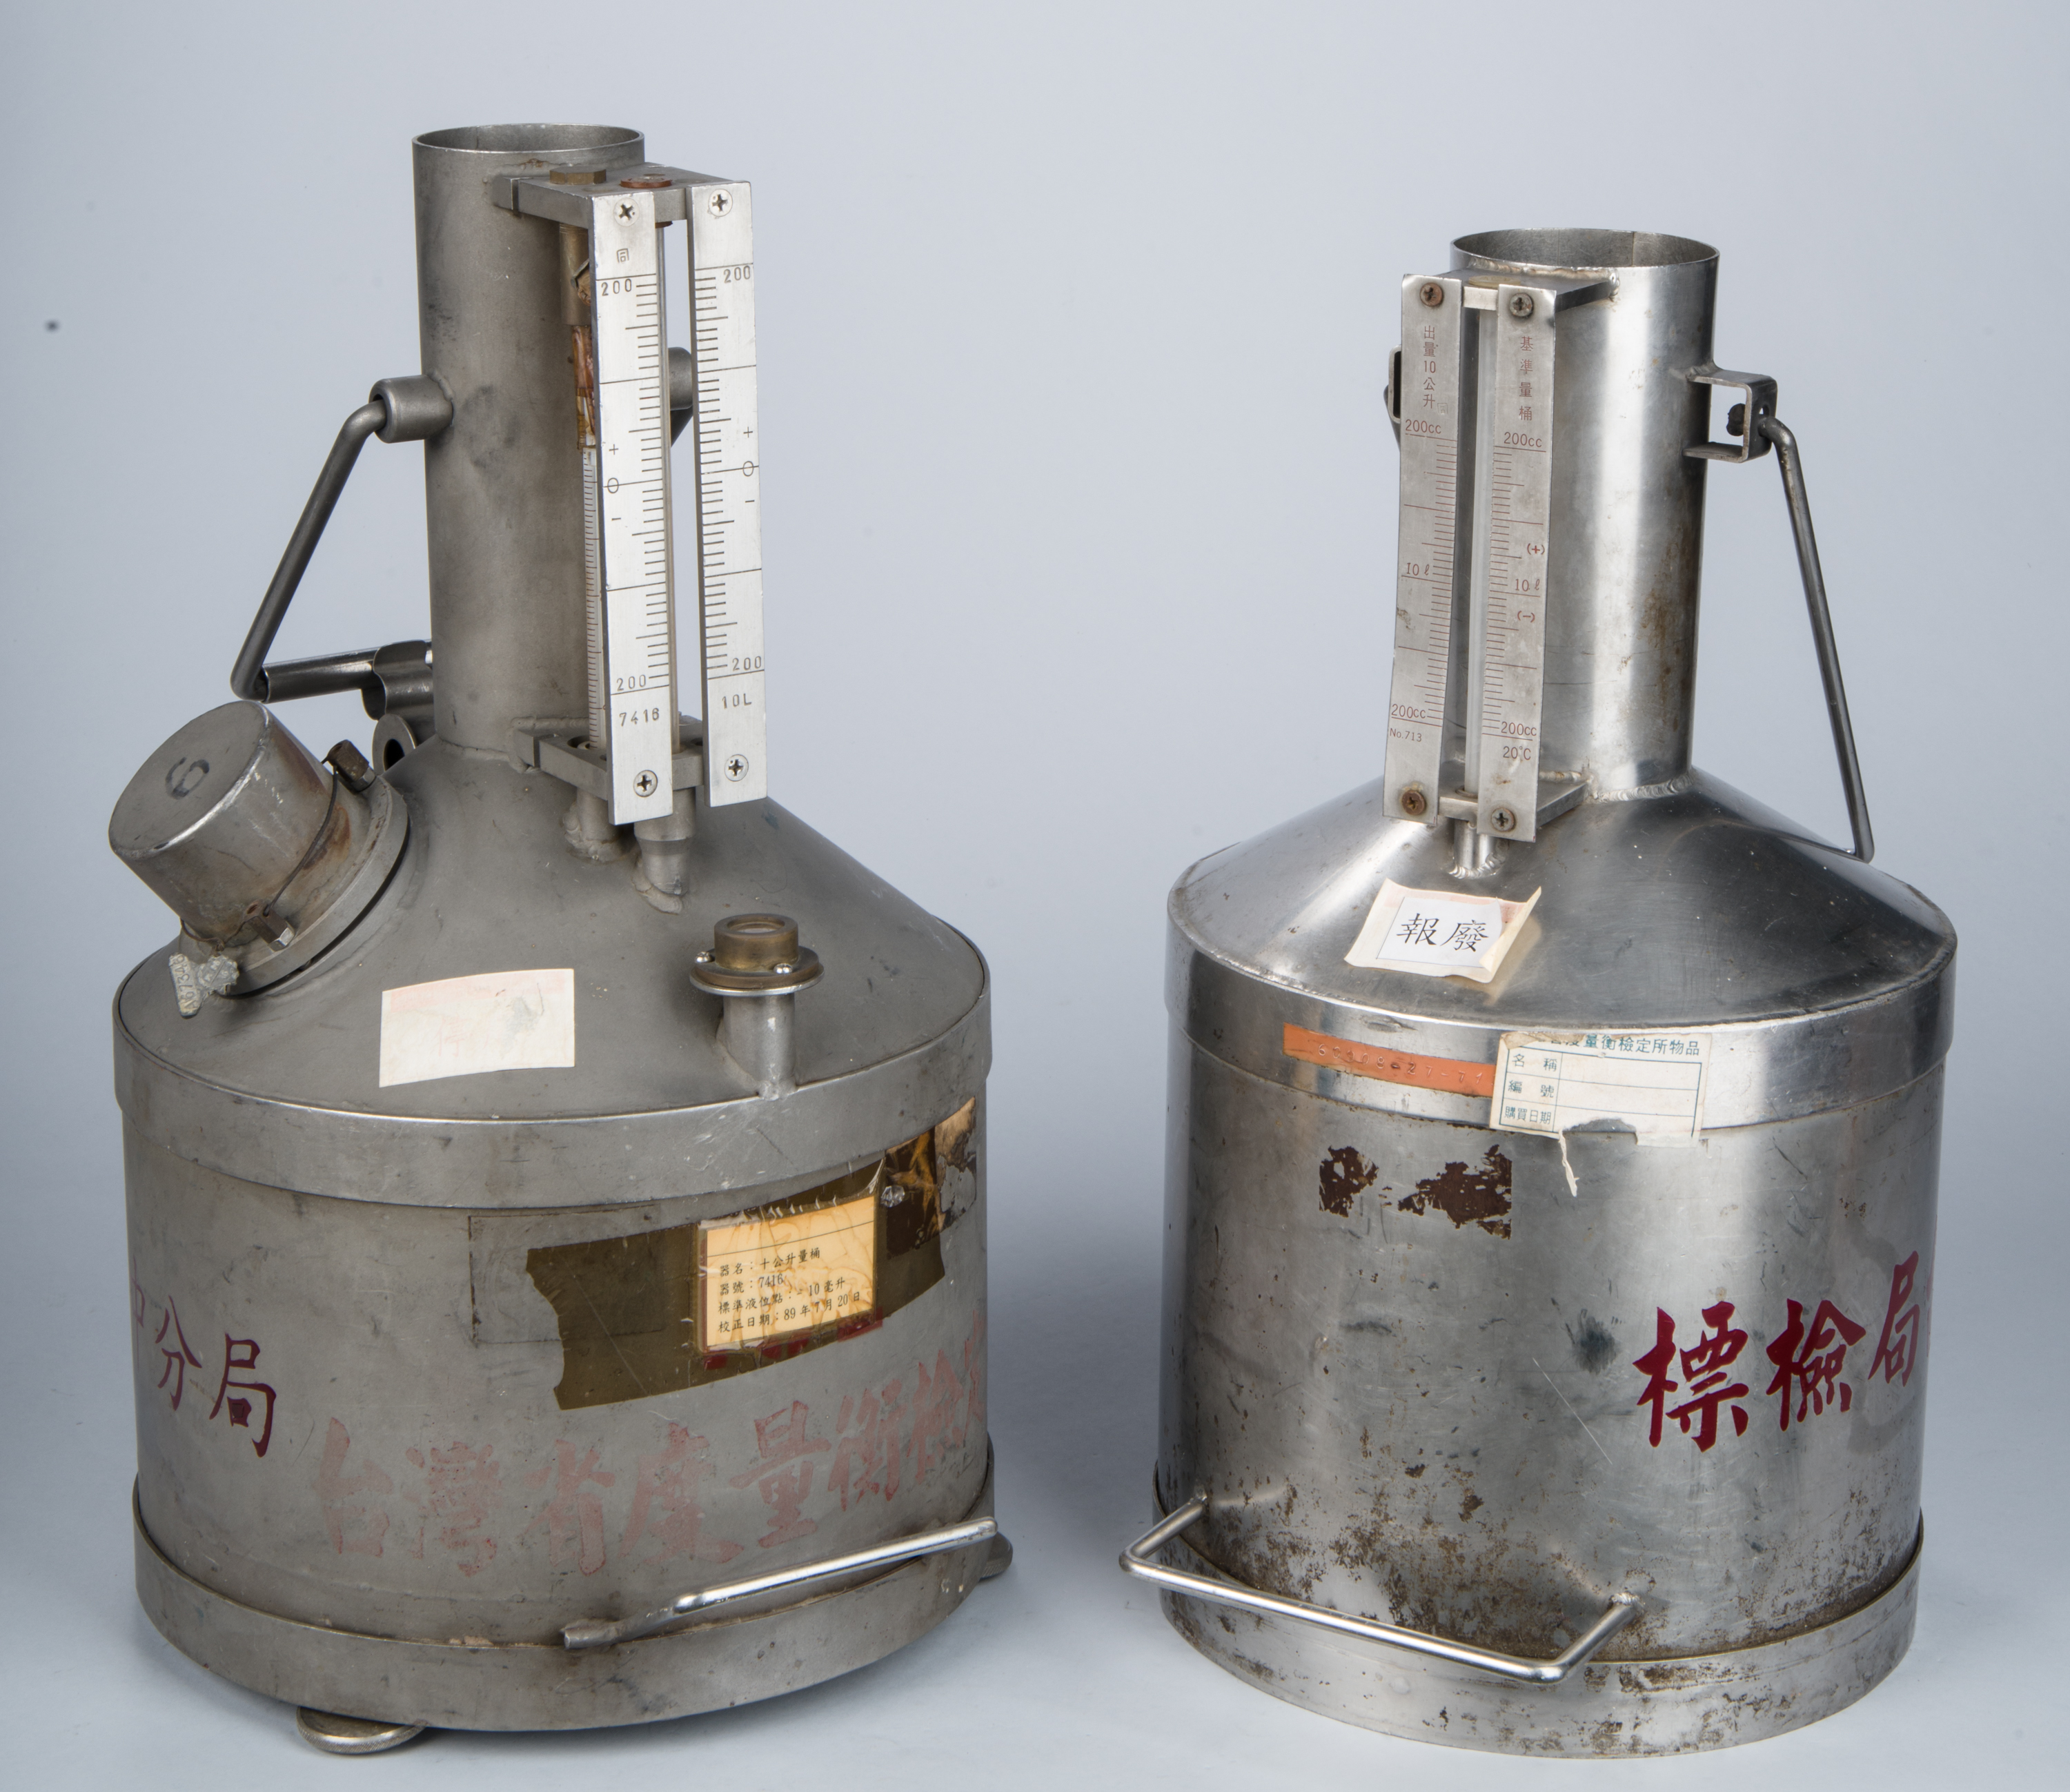 標準量桶（10公升  新式  較低）,共3張圖片